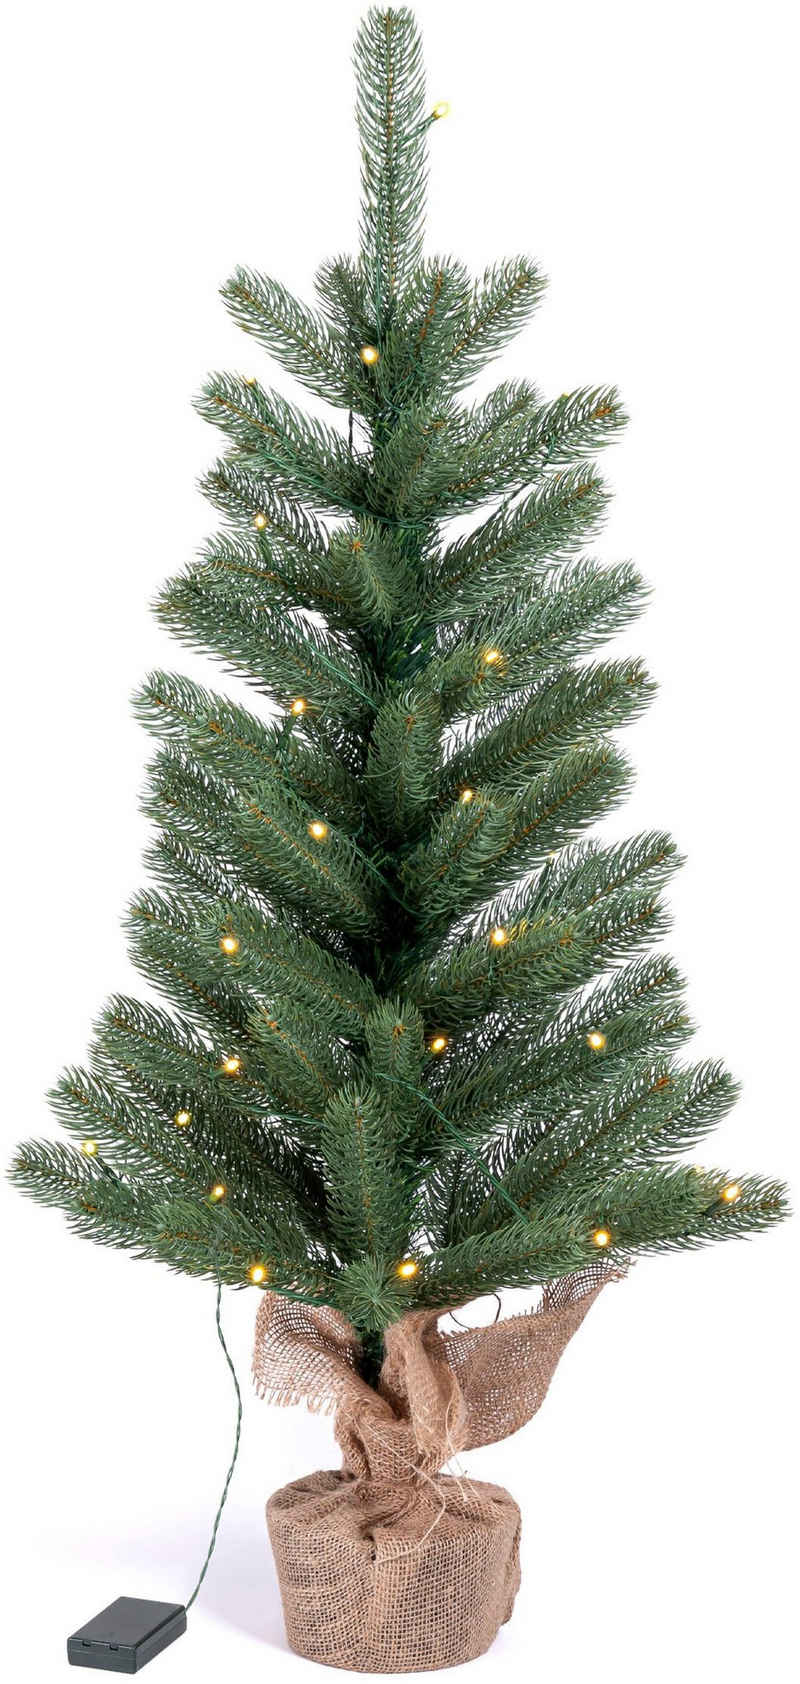 IC Winterworld Künstlicher Weihnachtsbaum LED-Tannenbaum, künstlicher Christbaum, Nordmanntanne, Weihnachtsdeko mit Jutebeutel um den Betonfuß, Batteriebetrieb